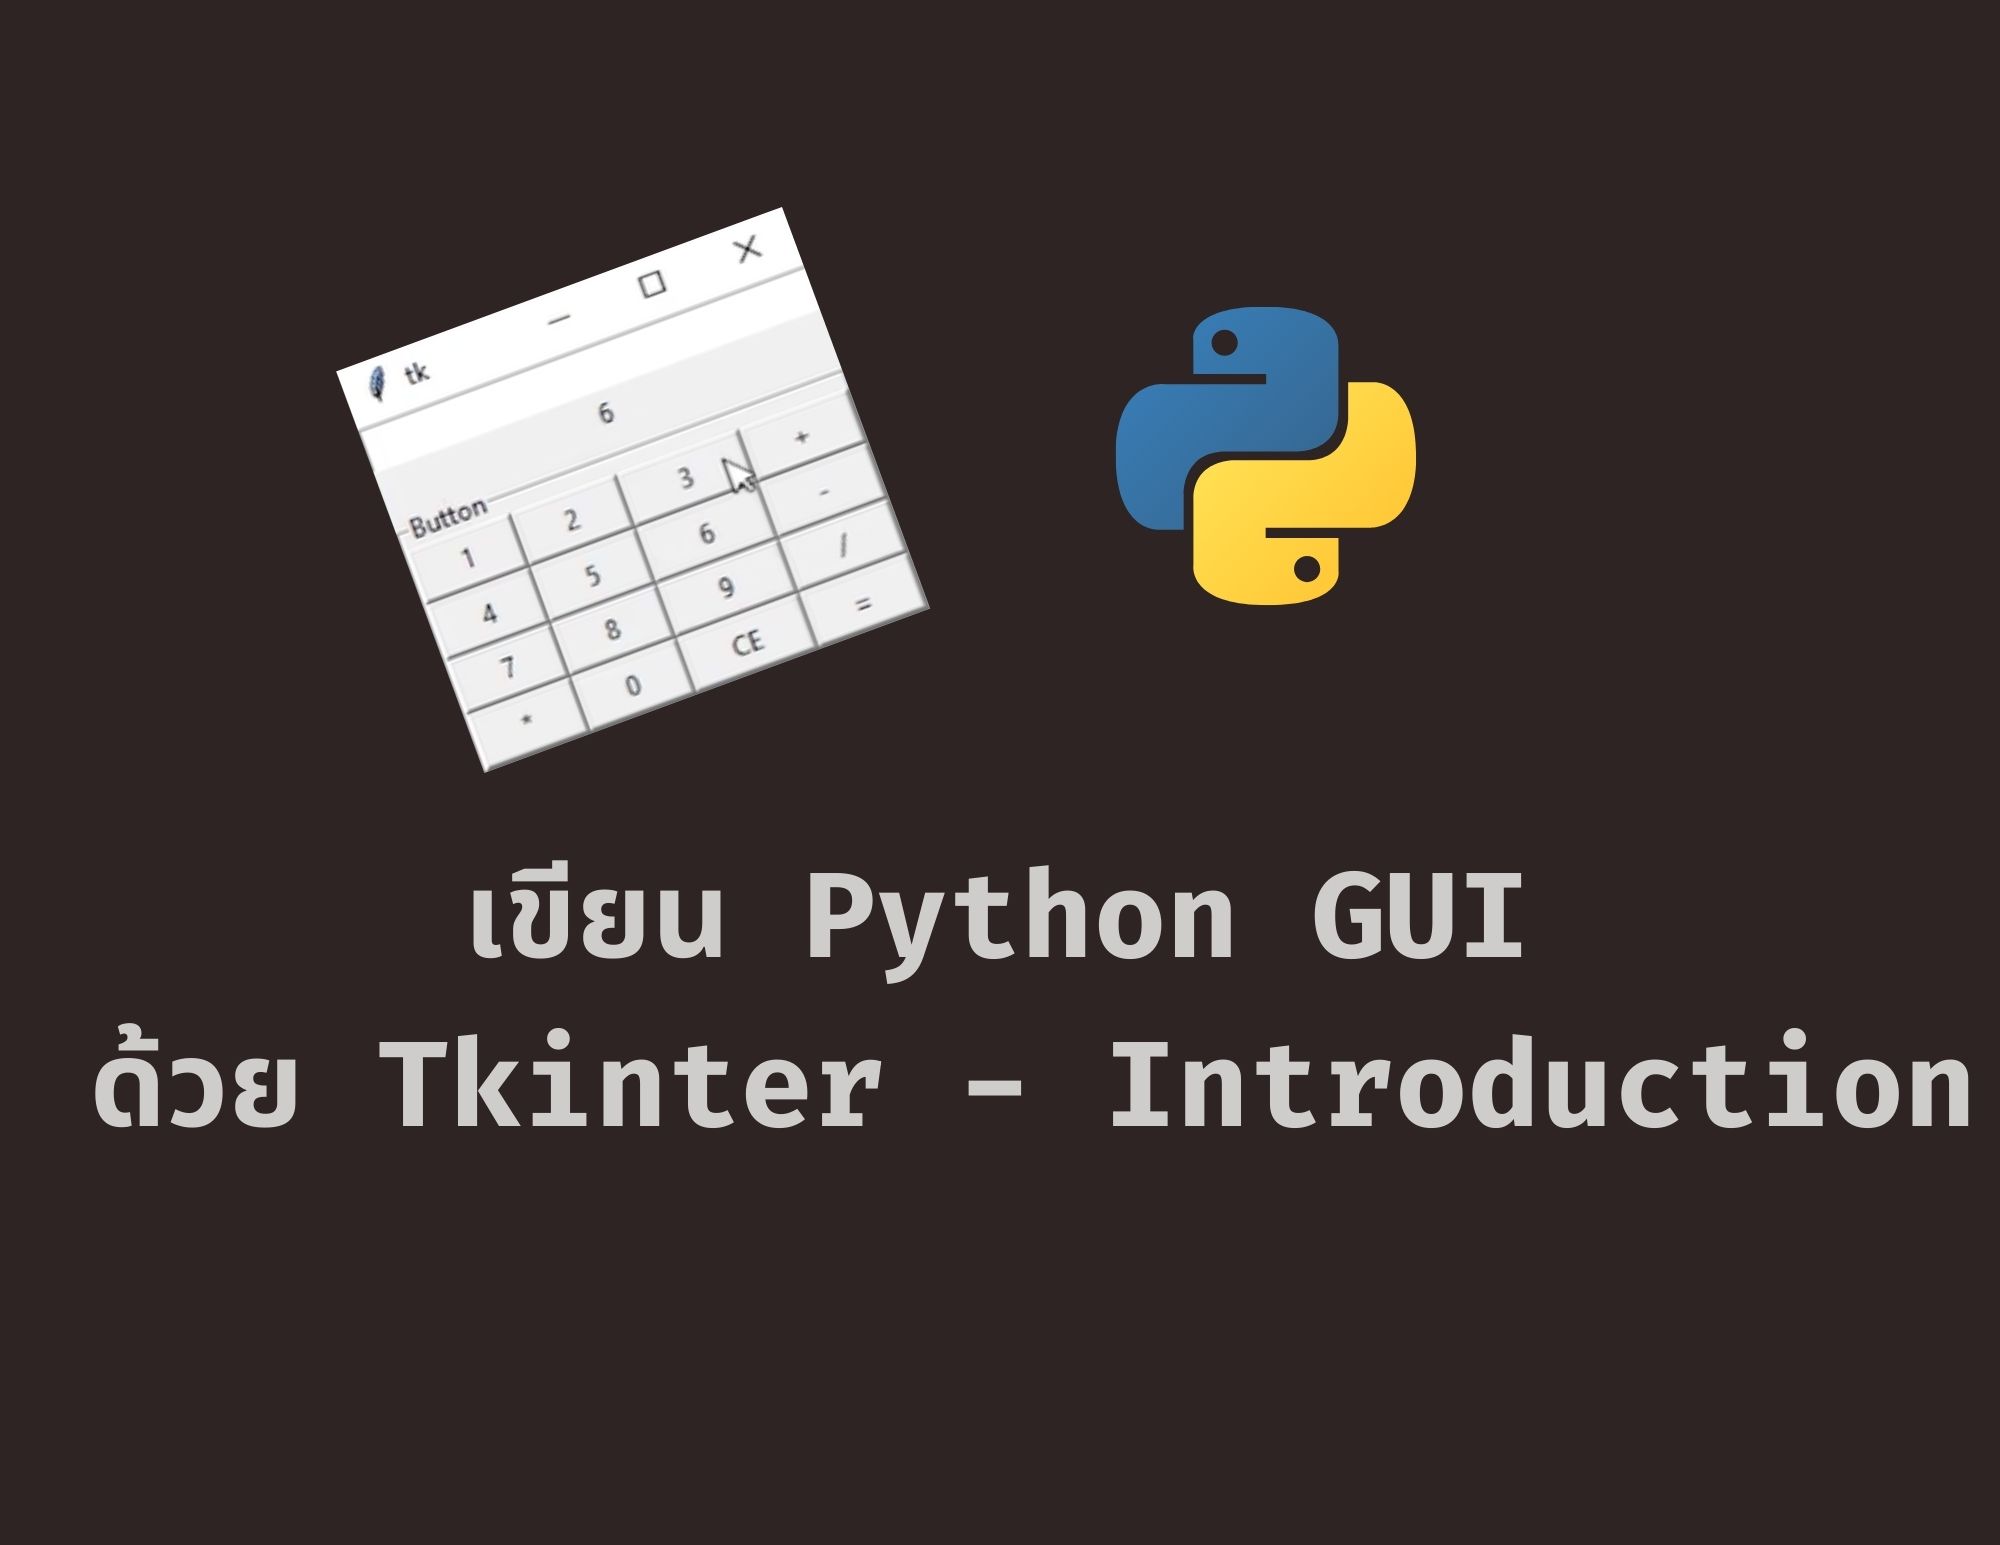 เขียน Python GUI ด้วย Tkinter ep1 - Introduction